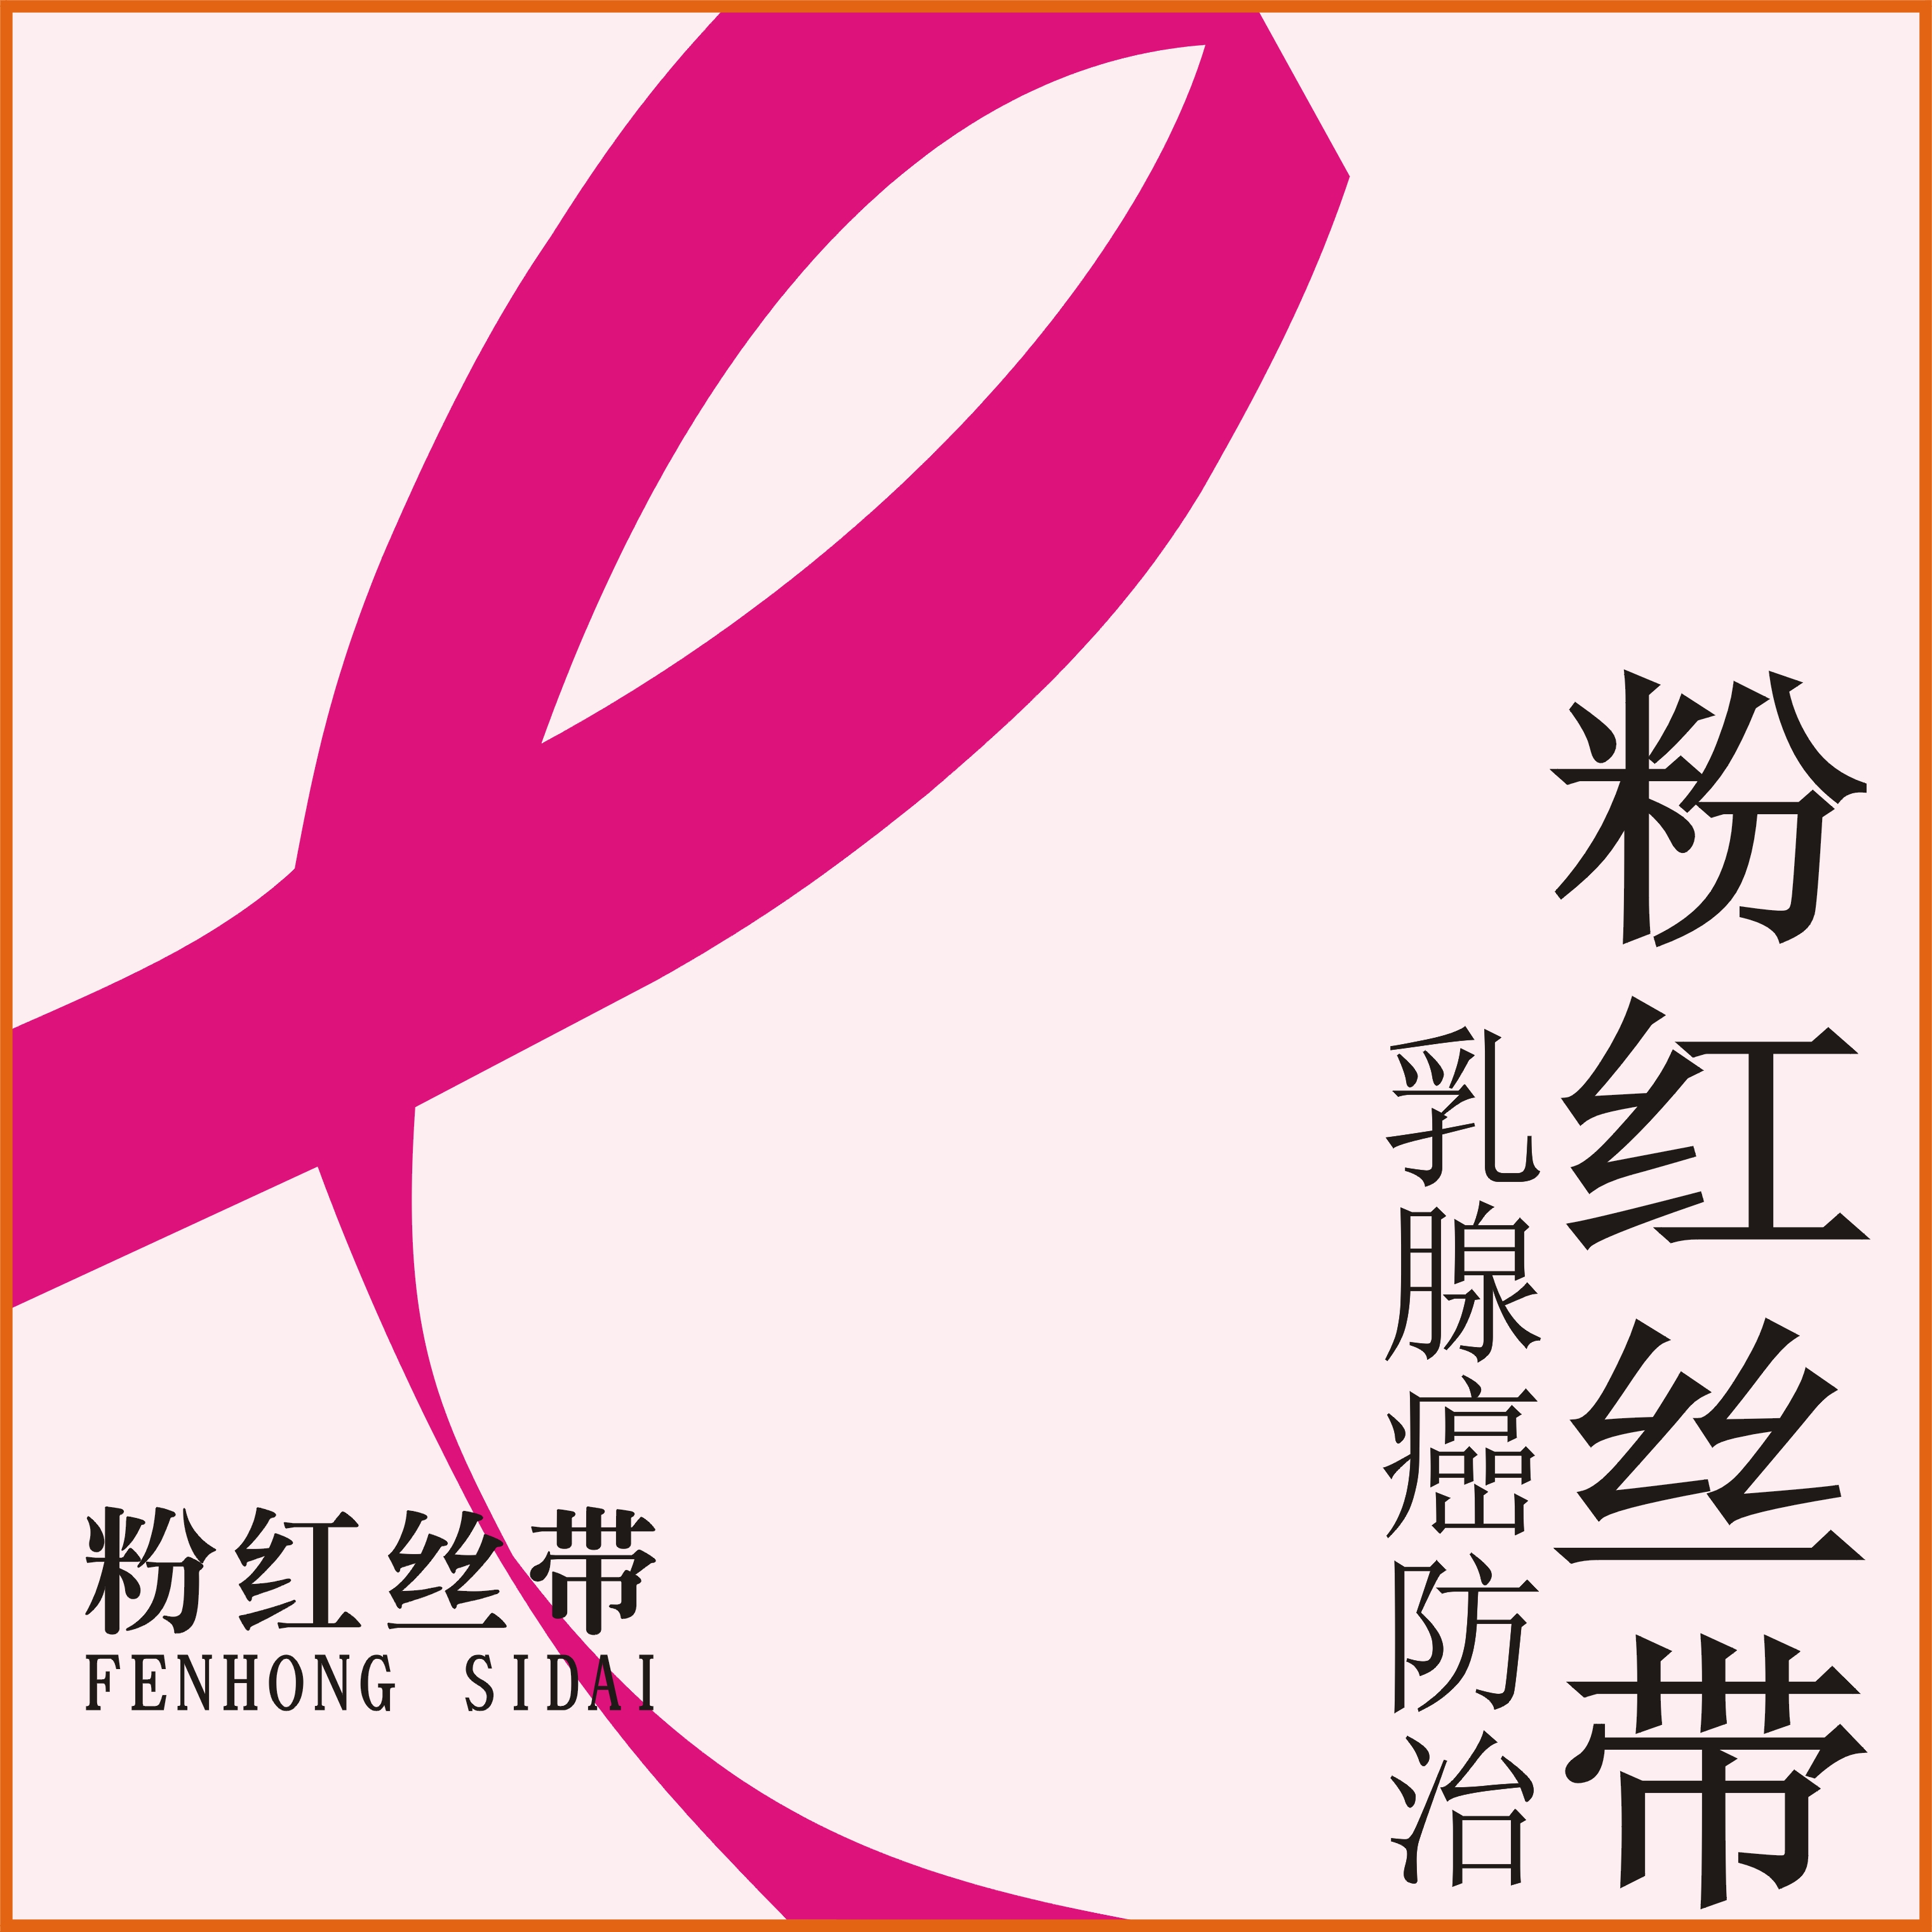 推进粉红丝带乳腺癌防治活动与中华粉红丝带女性健康